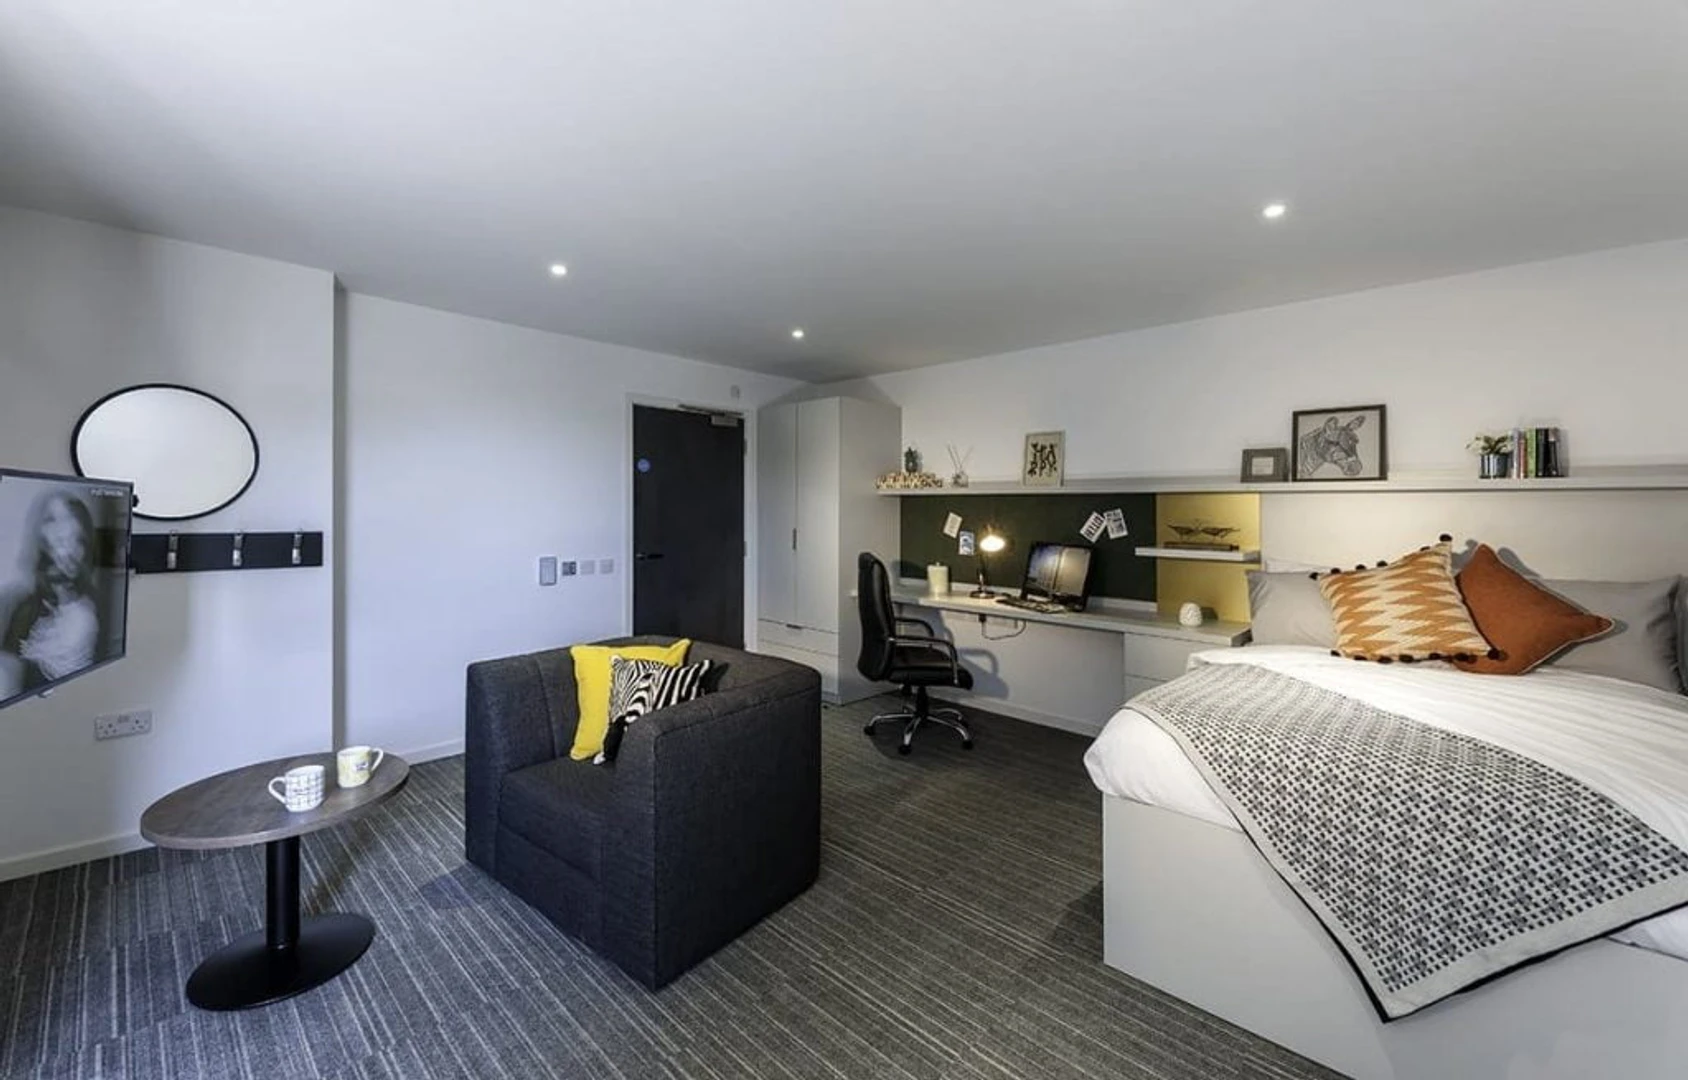 Alquiler de habitación en piso compartido en Edinburgh